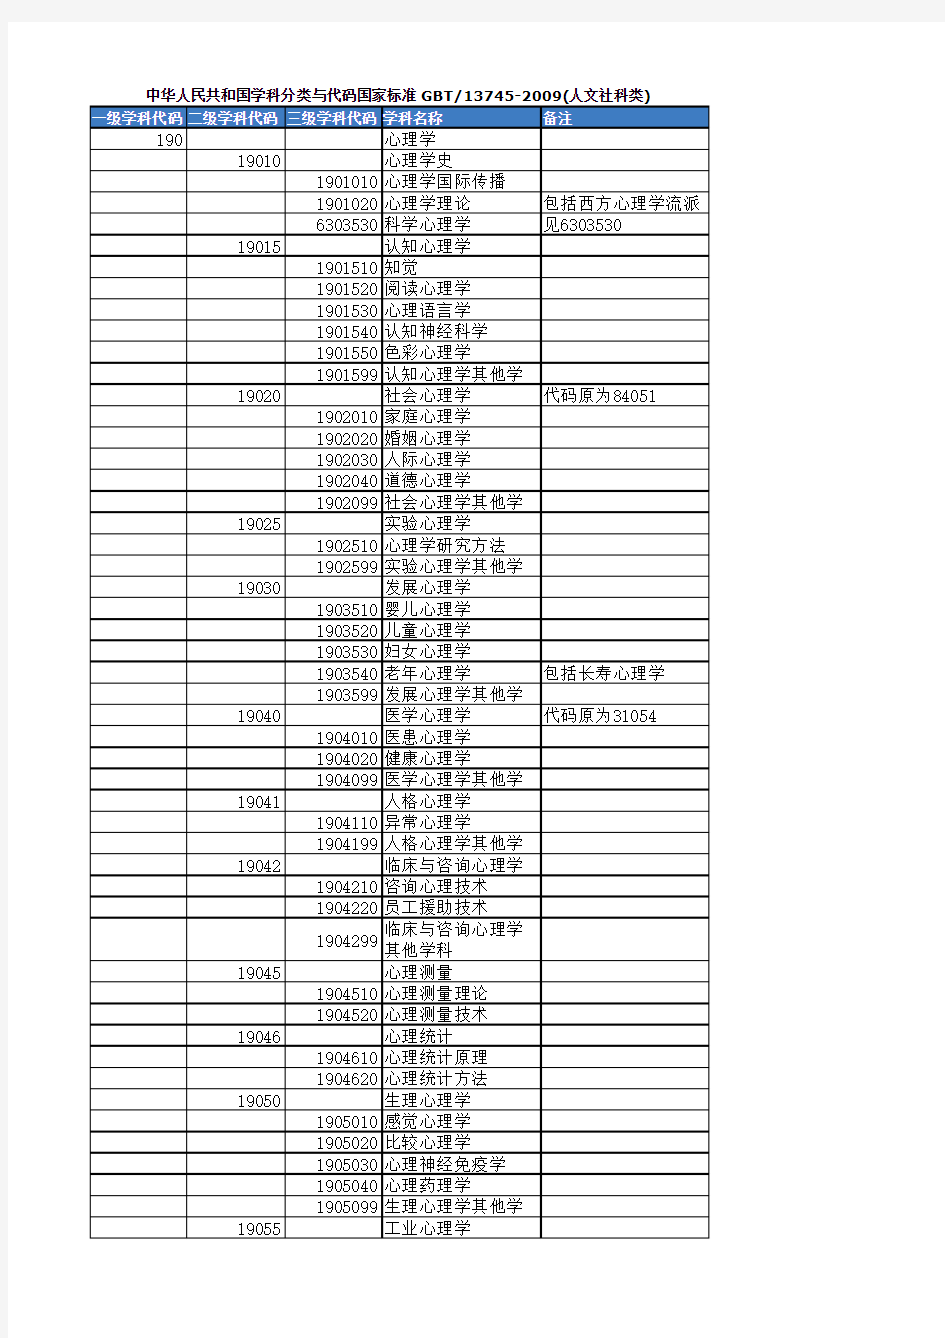 中华人民共和国学科分类与代码国家标准 GBT 13745-2009(人文社科类)